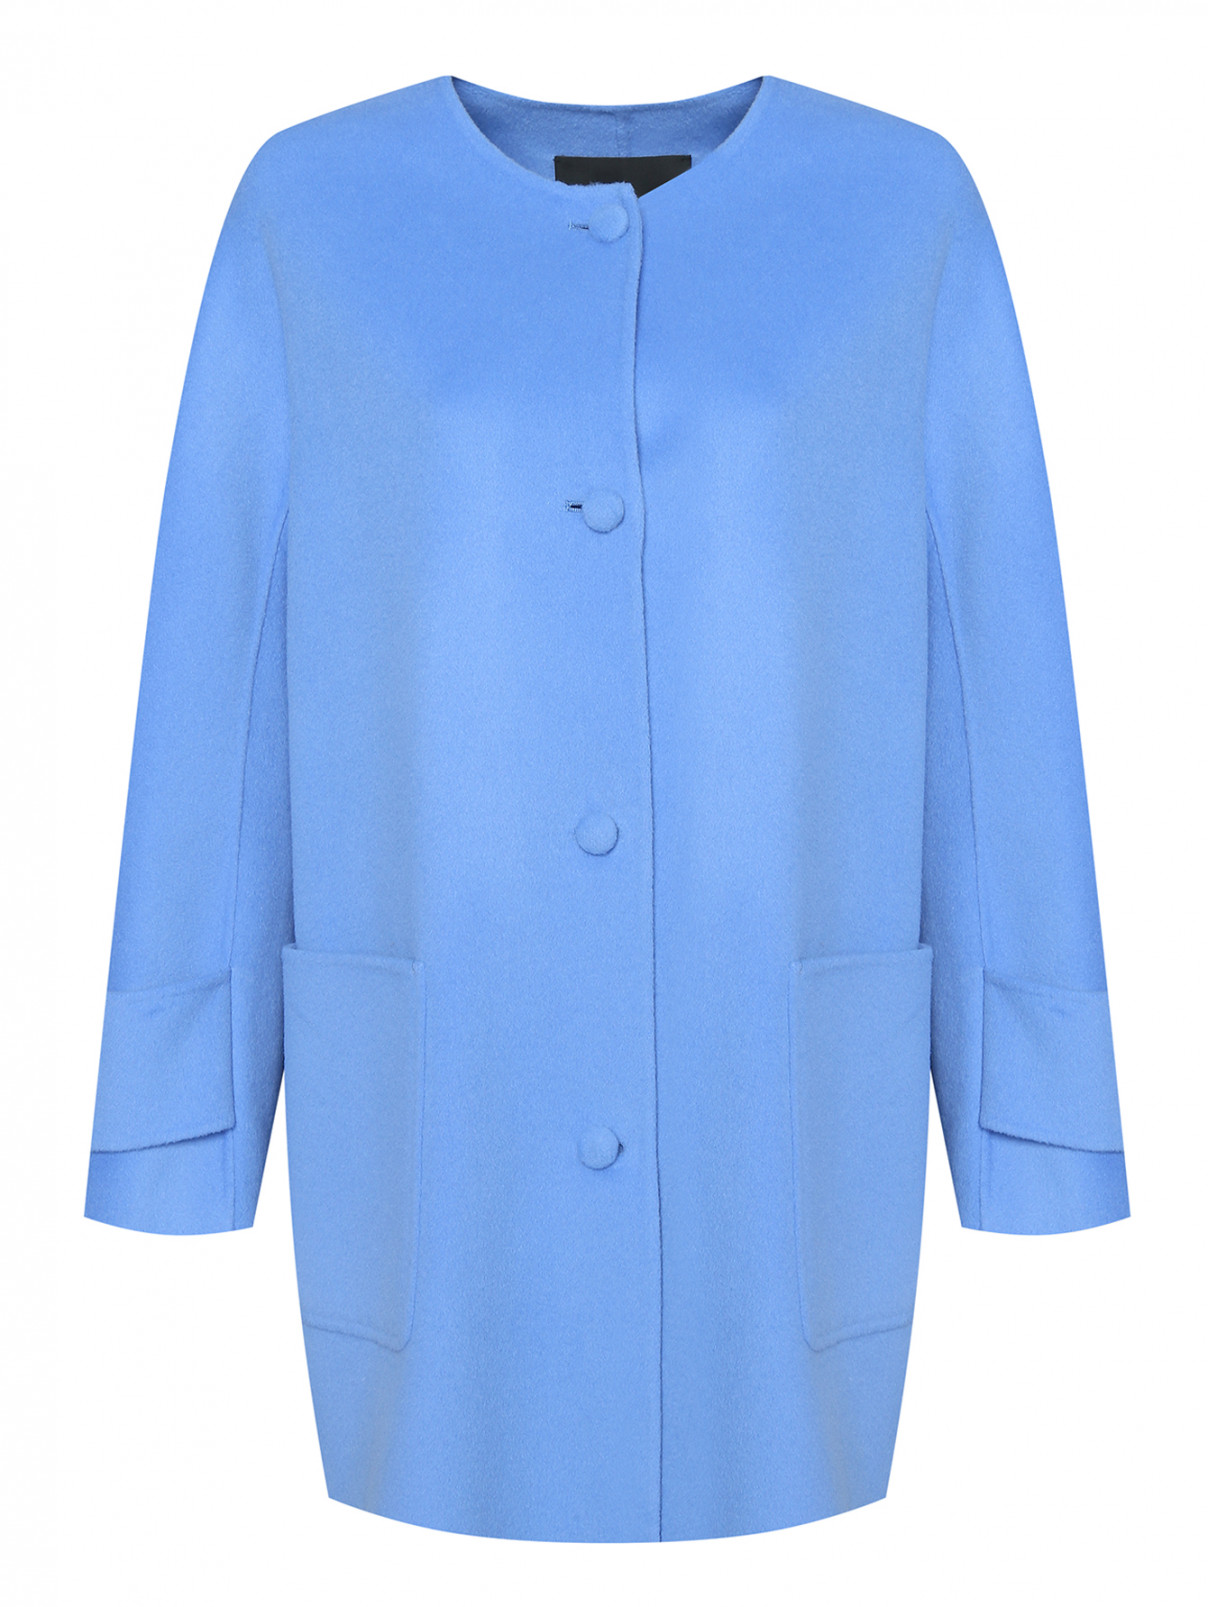 Полупальто из шерсти с карманами Marina Rinaldi  –  Общий вид  – Цвет:  Синий